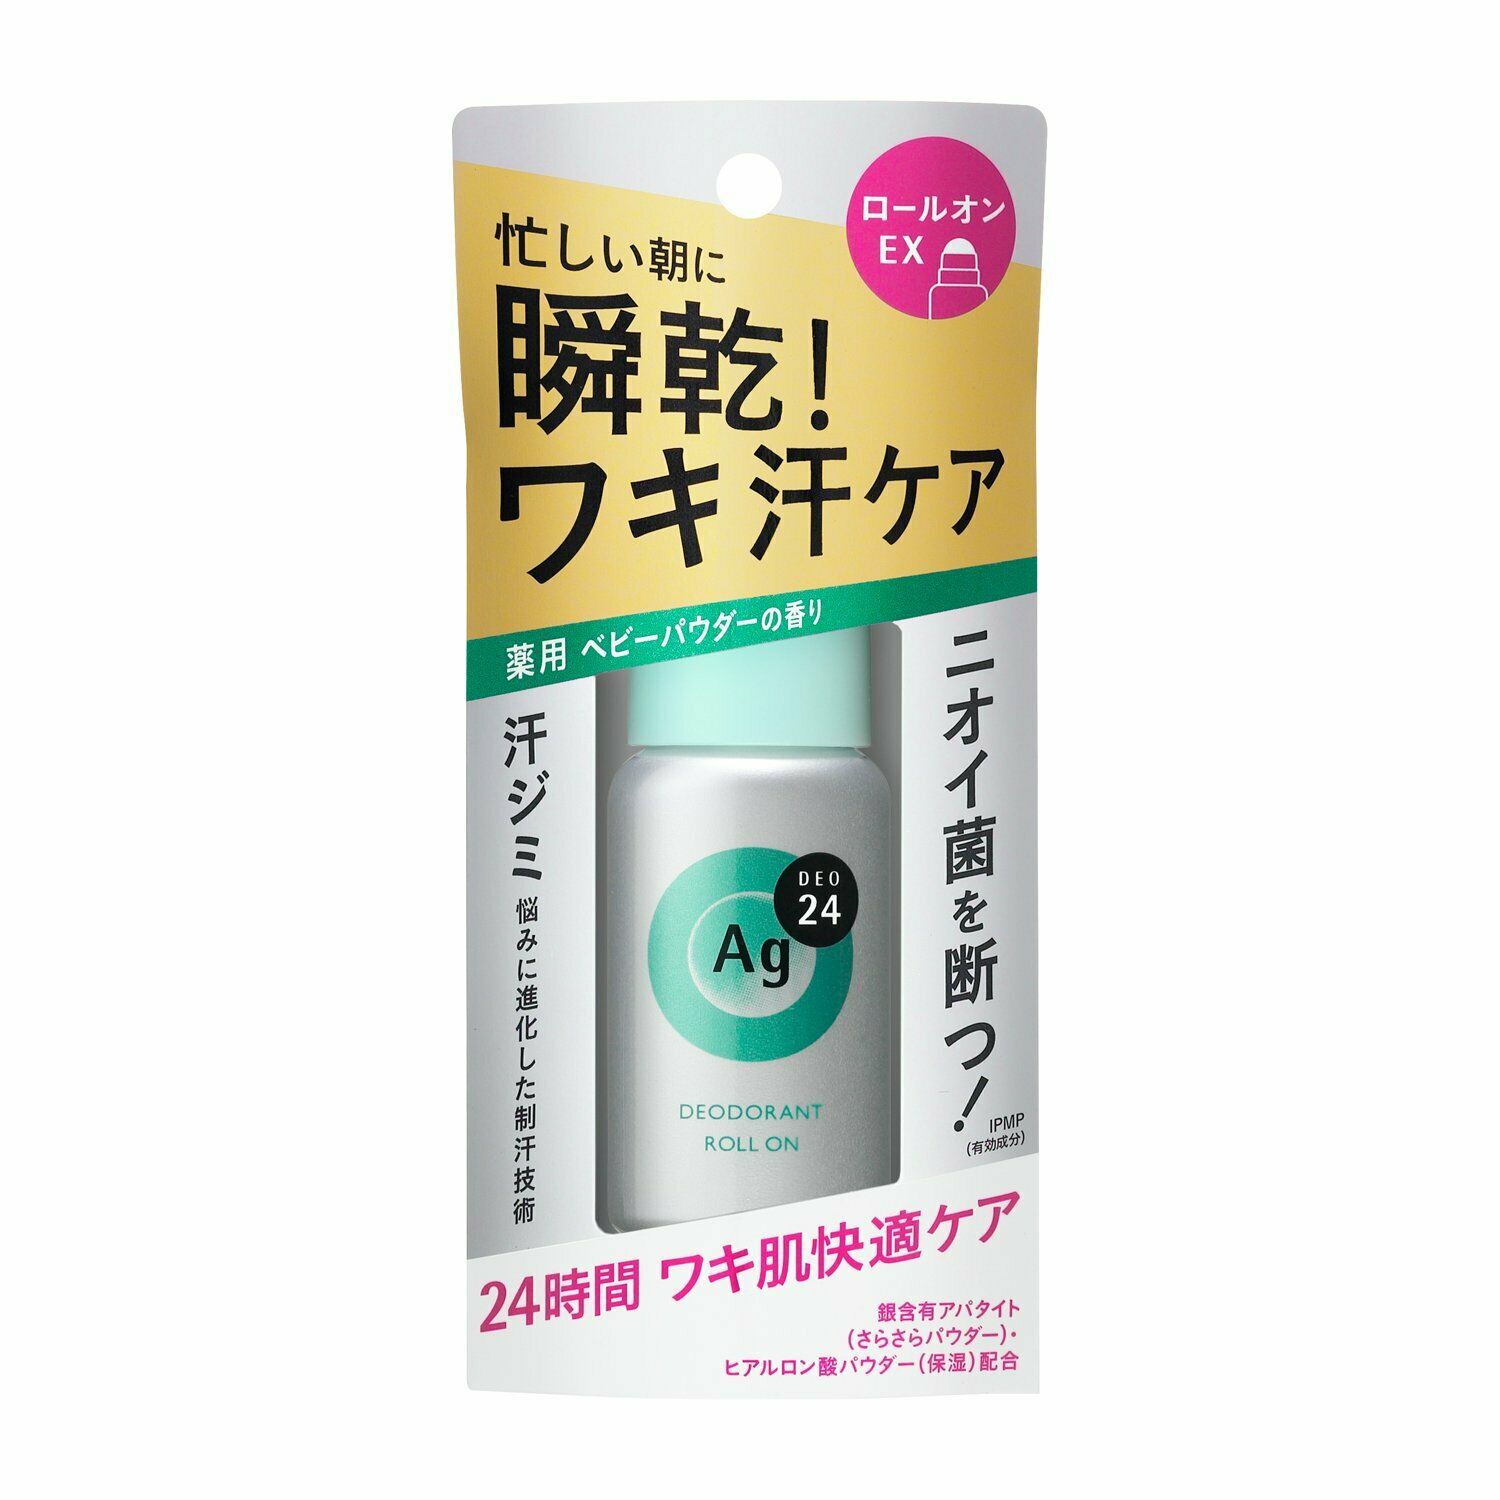 Shiseido Ag DEO 24 Deodorant Roll-on EX Baby Powder Fragrance 40mL